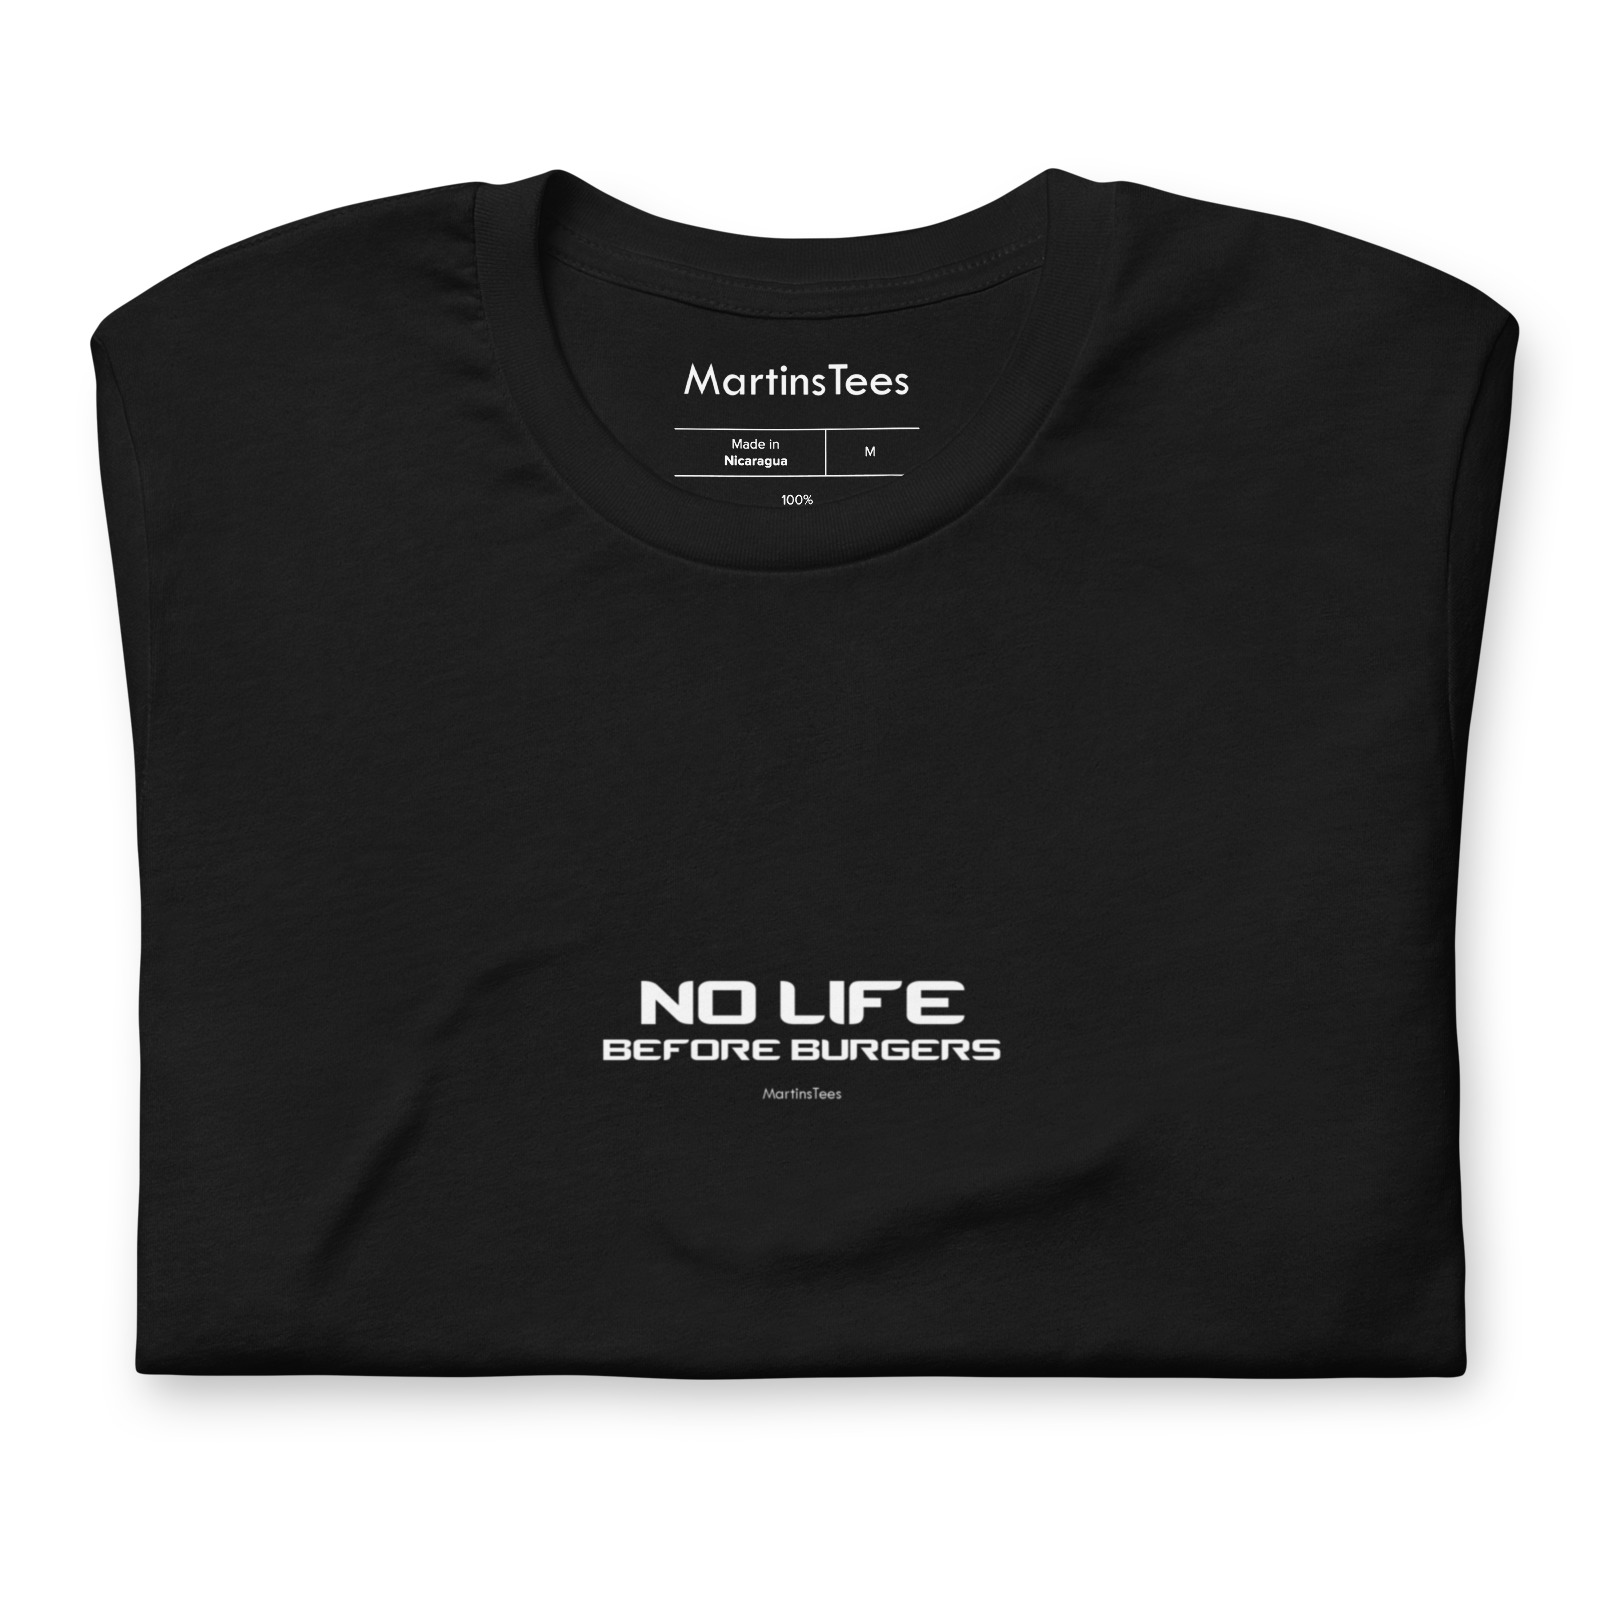 T-shirt: NO LIFE - BEFORE BURGERS